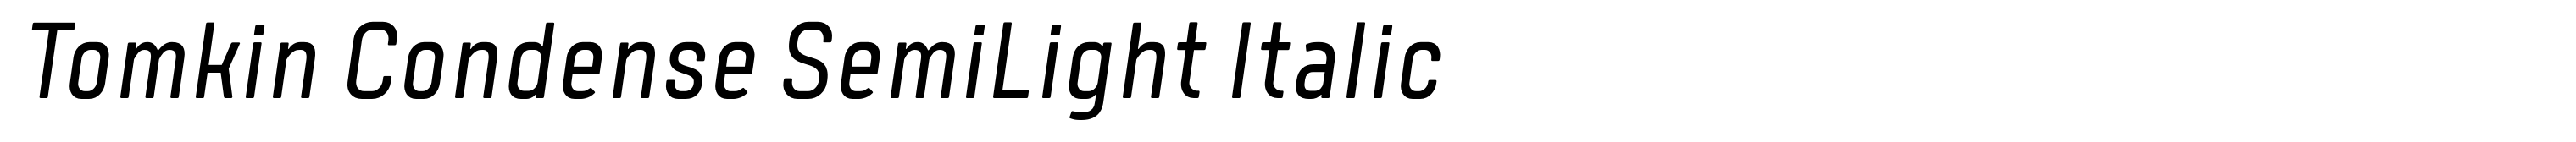 Tomkin Condense SemiLight Italic